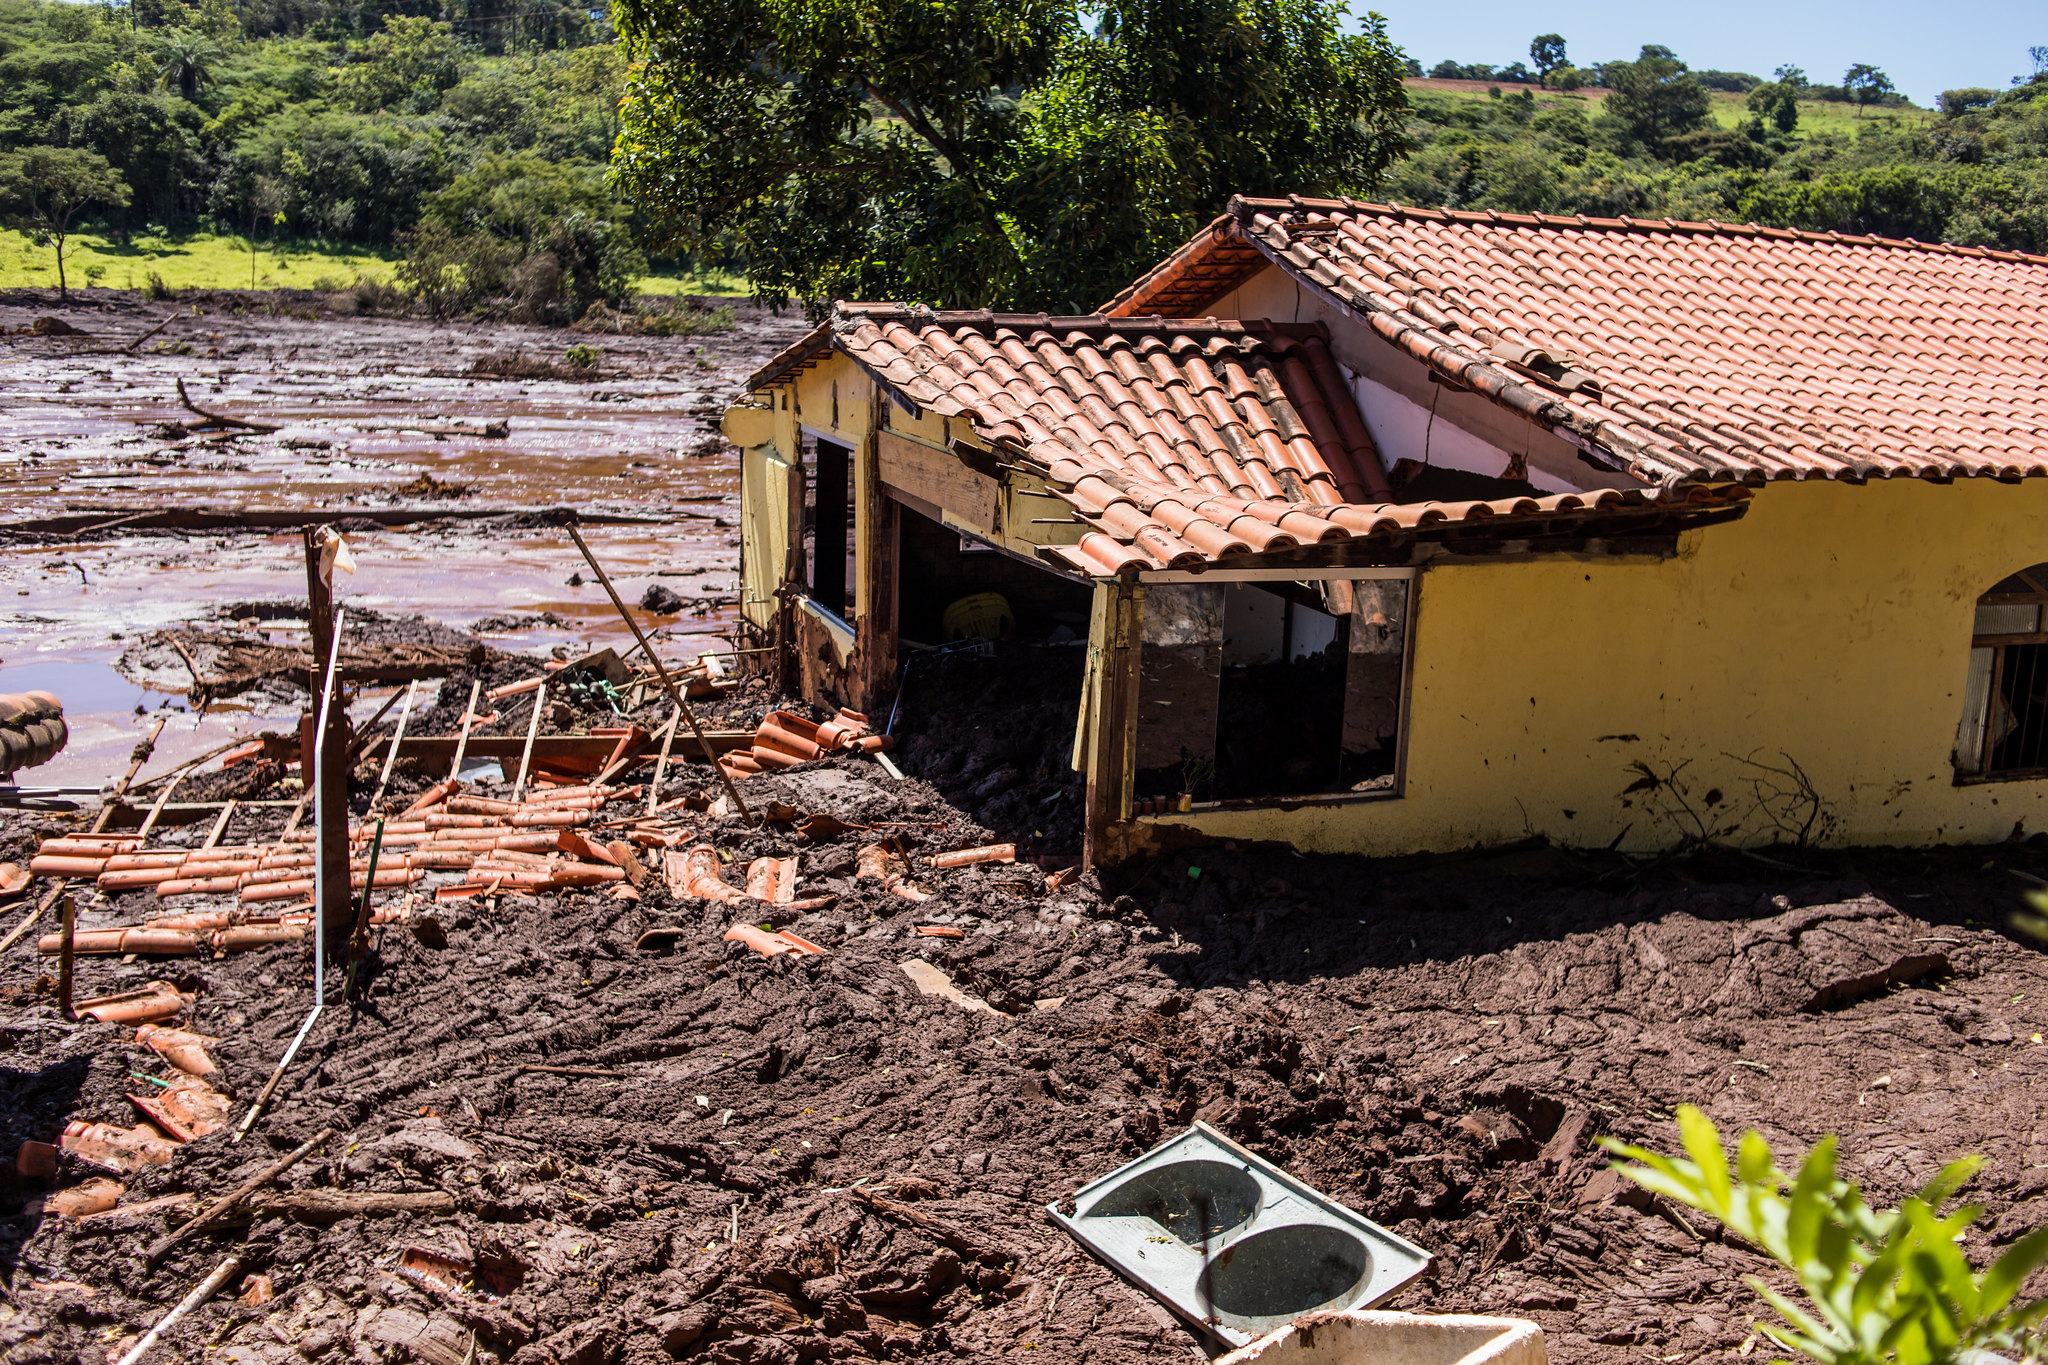 Casa amarela destruiída em meio à lama e entulhos